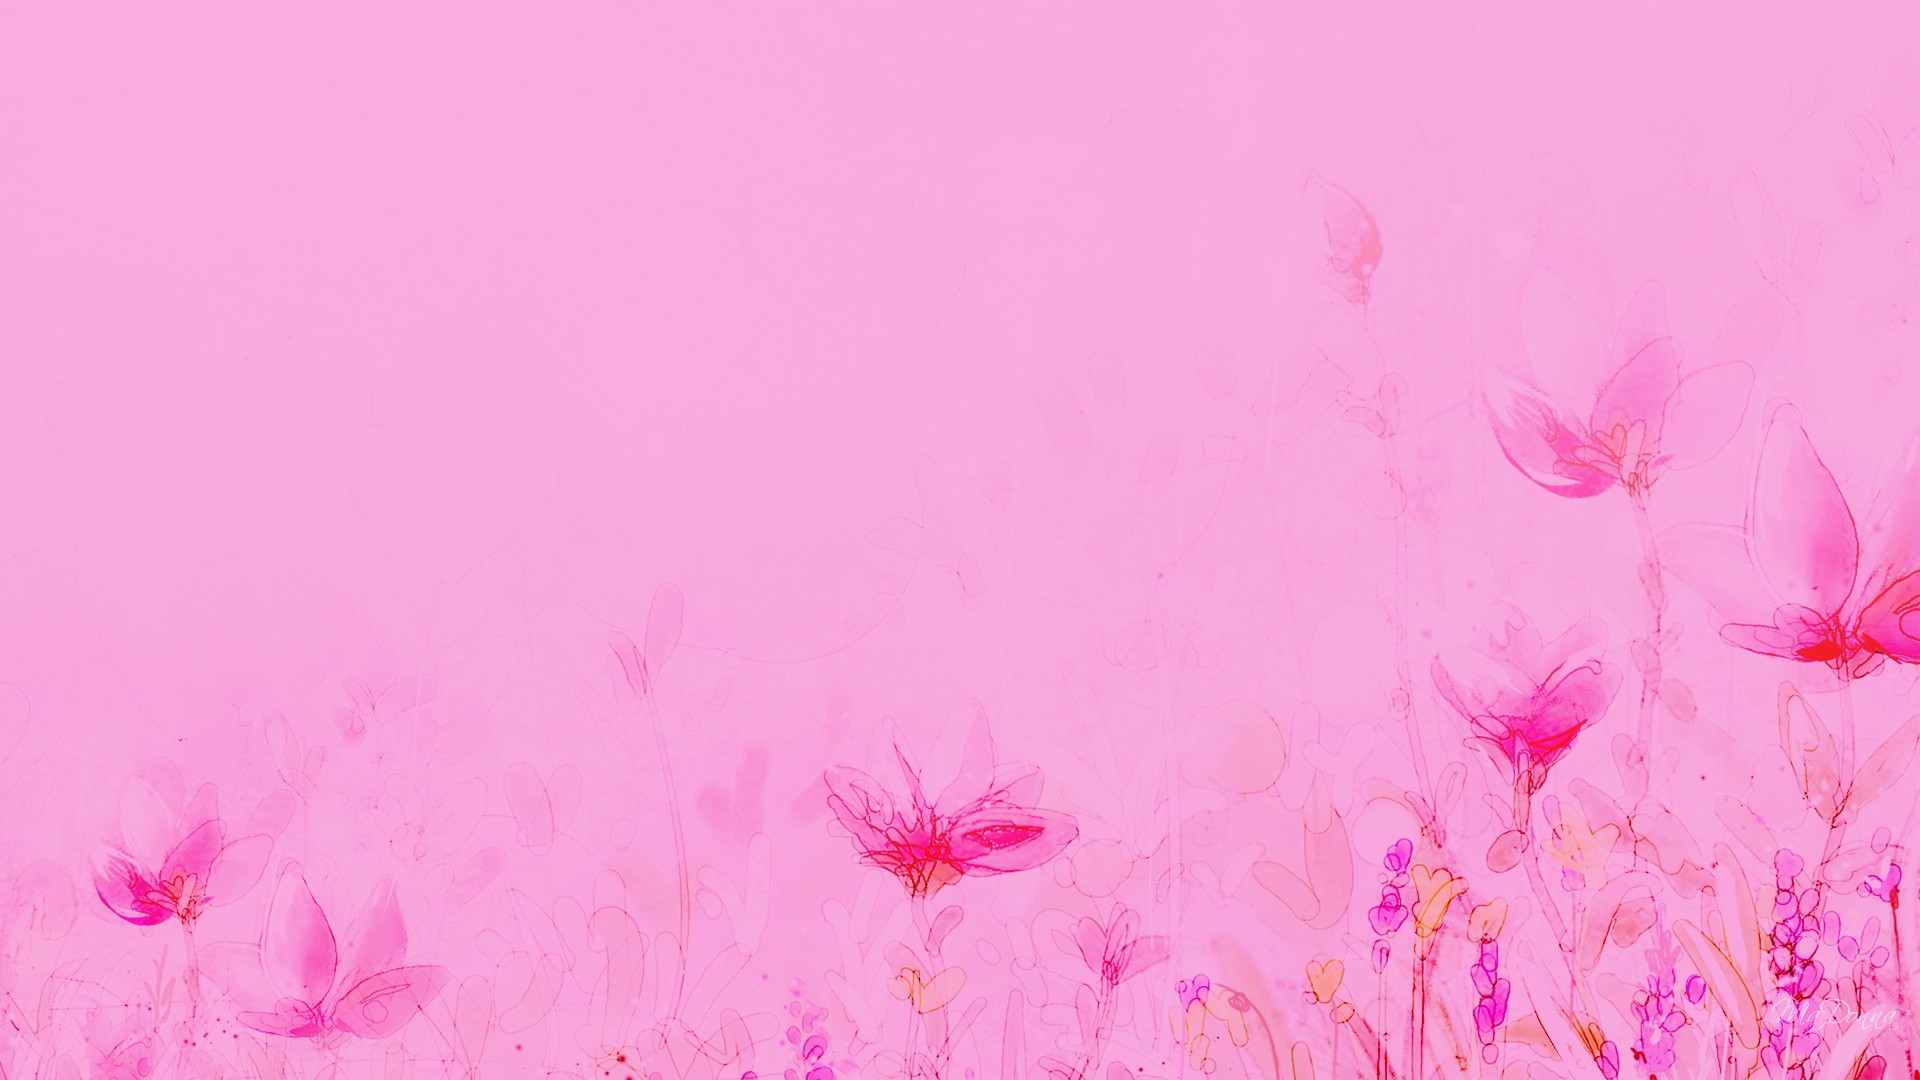 Pink flower illustration backgrounds 